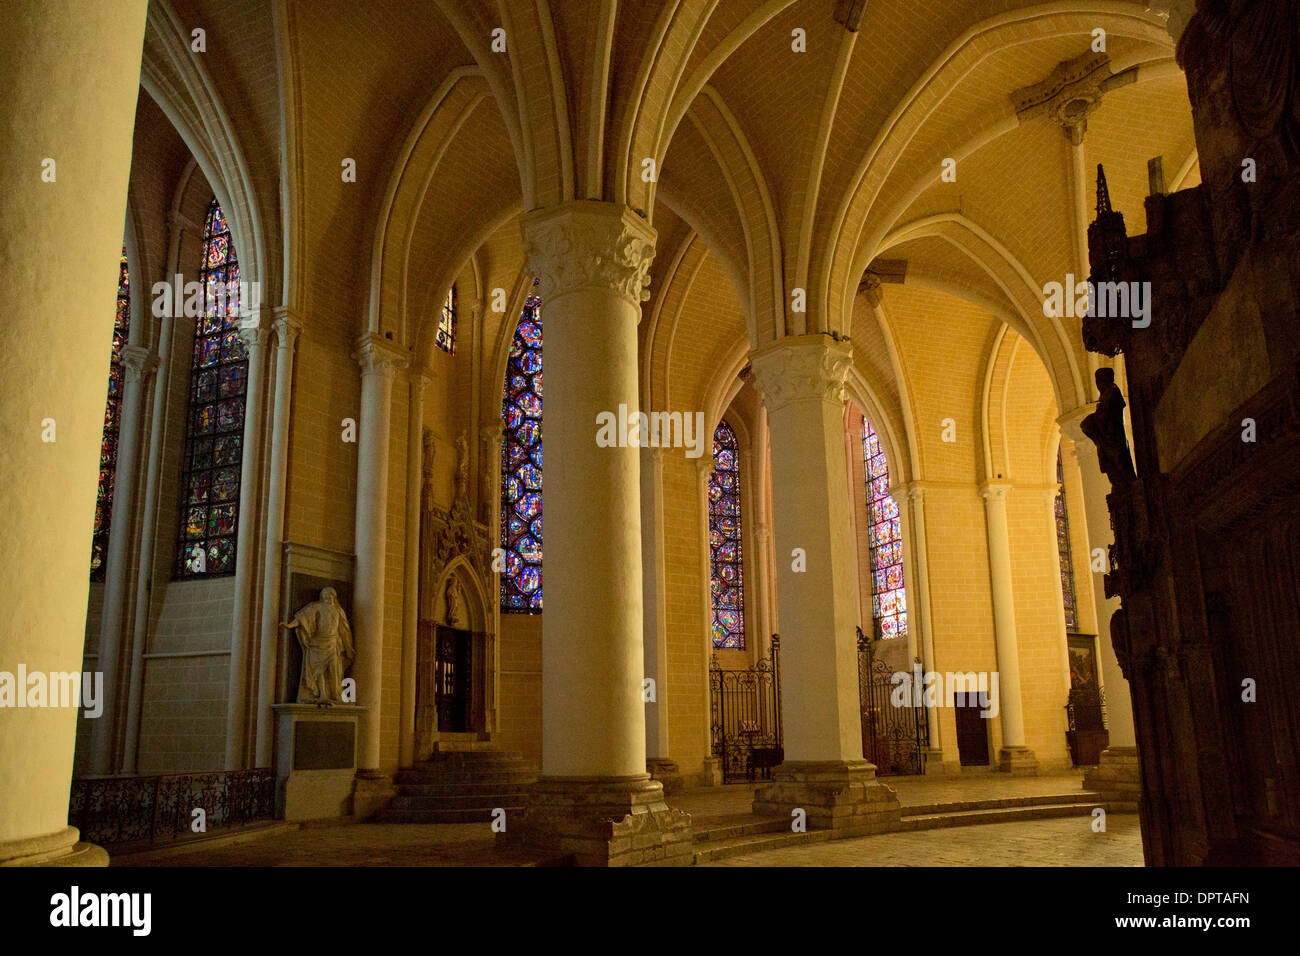 Intérieur de la cathédrale gothique du 13ème siècle à Chartres, au nord de la France. Banque D'Images